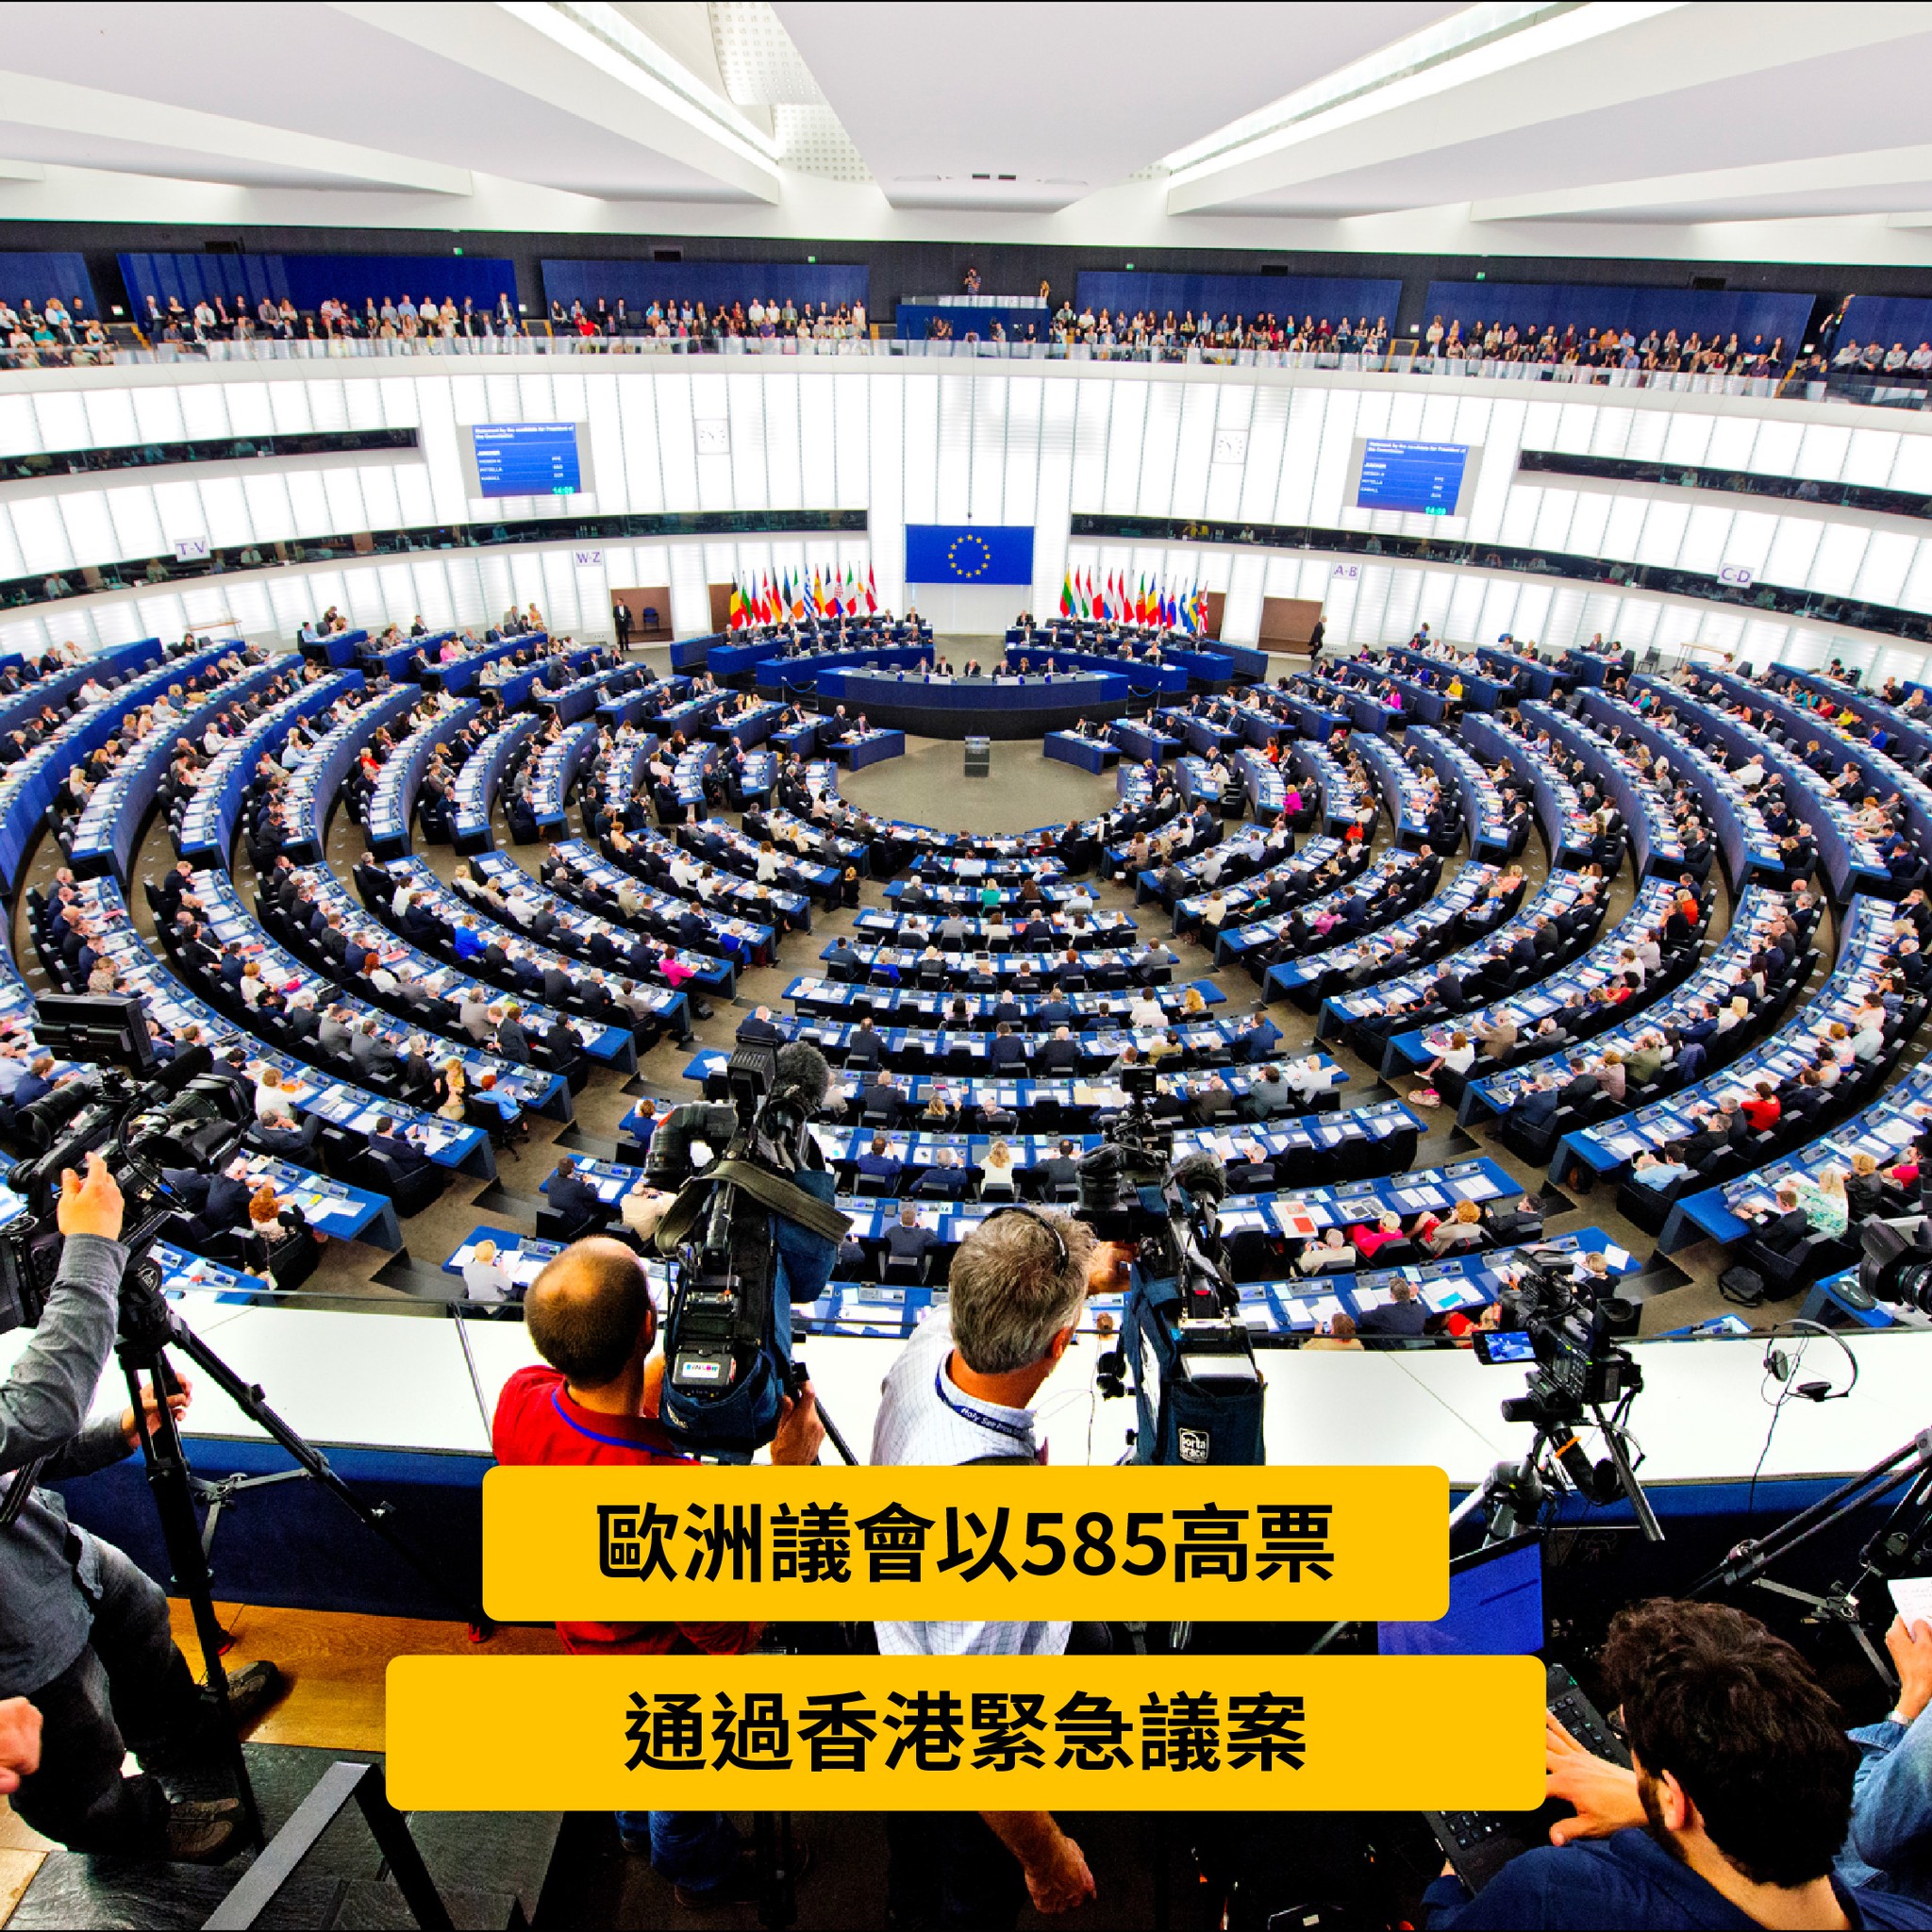 歐州議會以585票通過『關於香港侵犯基本自由』緊急決議案...